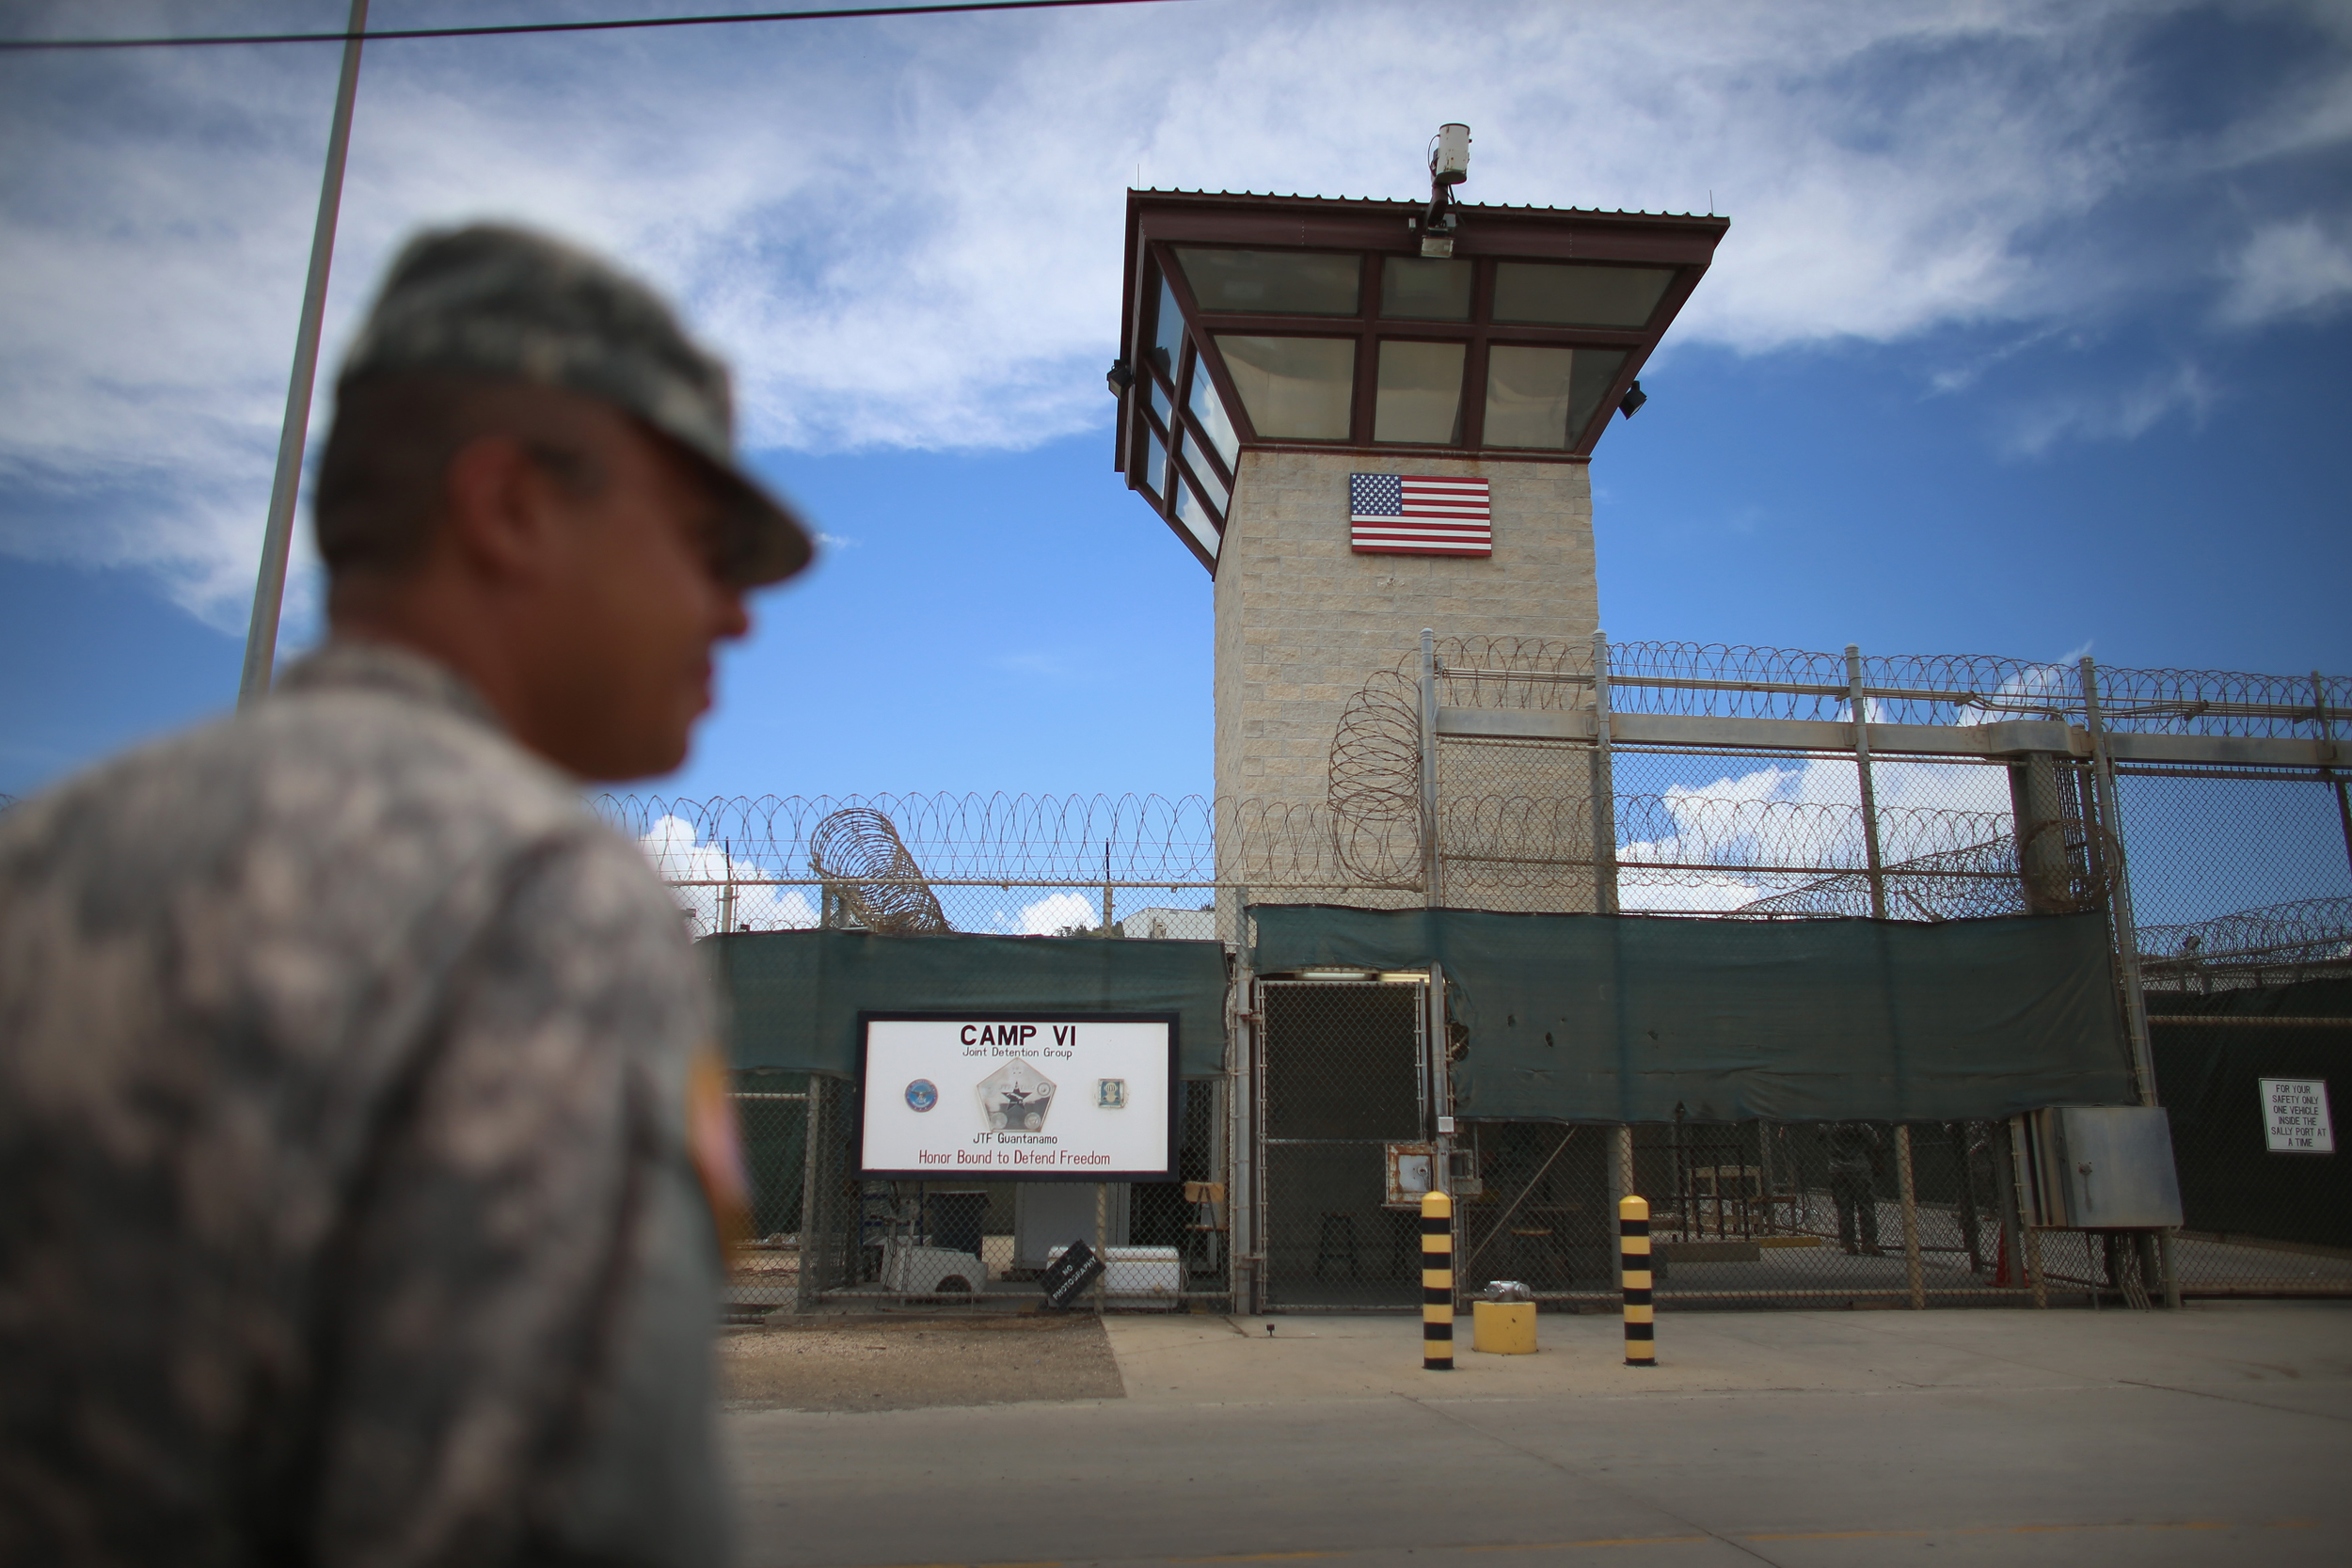 Una experta en derechos humanos viajará en los próximos días a la cárcel militar de Guantánamo, por primera vez tras dos décadas de solicitarlo (Getty Images)